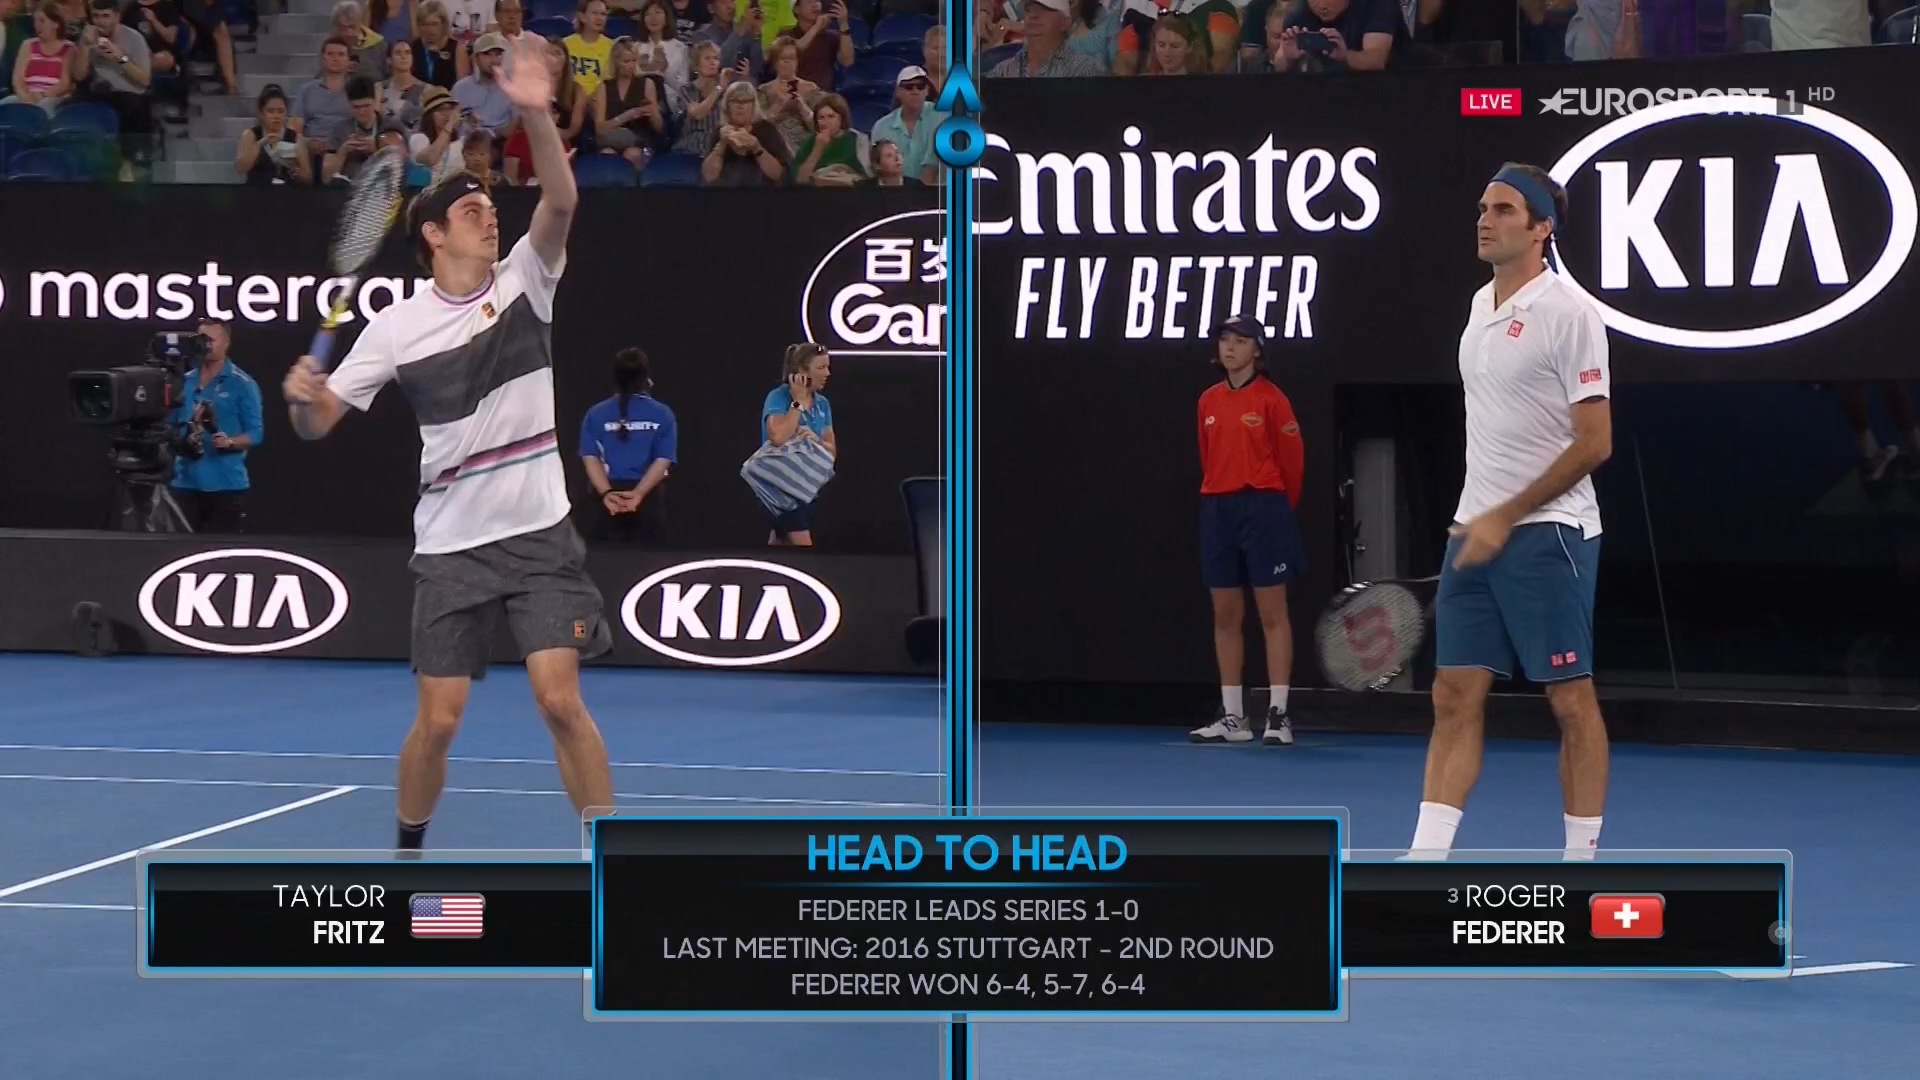 TENNIS: Australian Open 3rd Round - Taylor Fritz vs Roger Federer - 18/01/20191920 x 1080